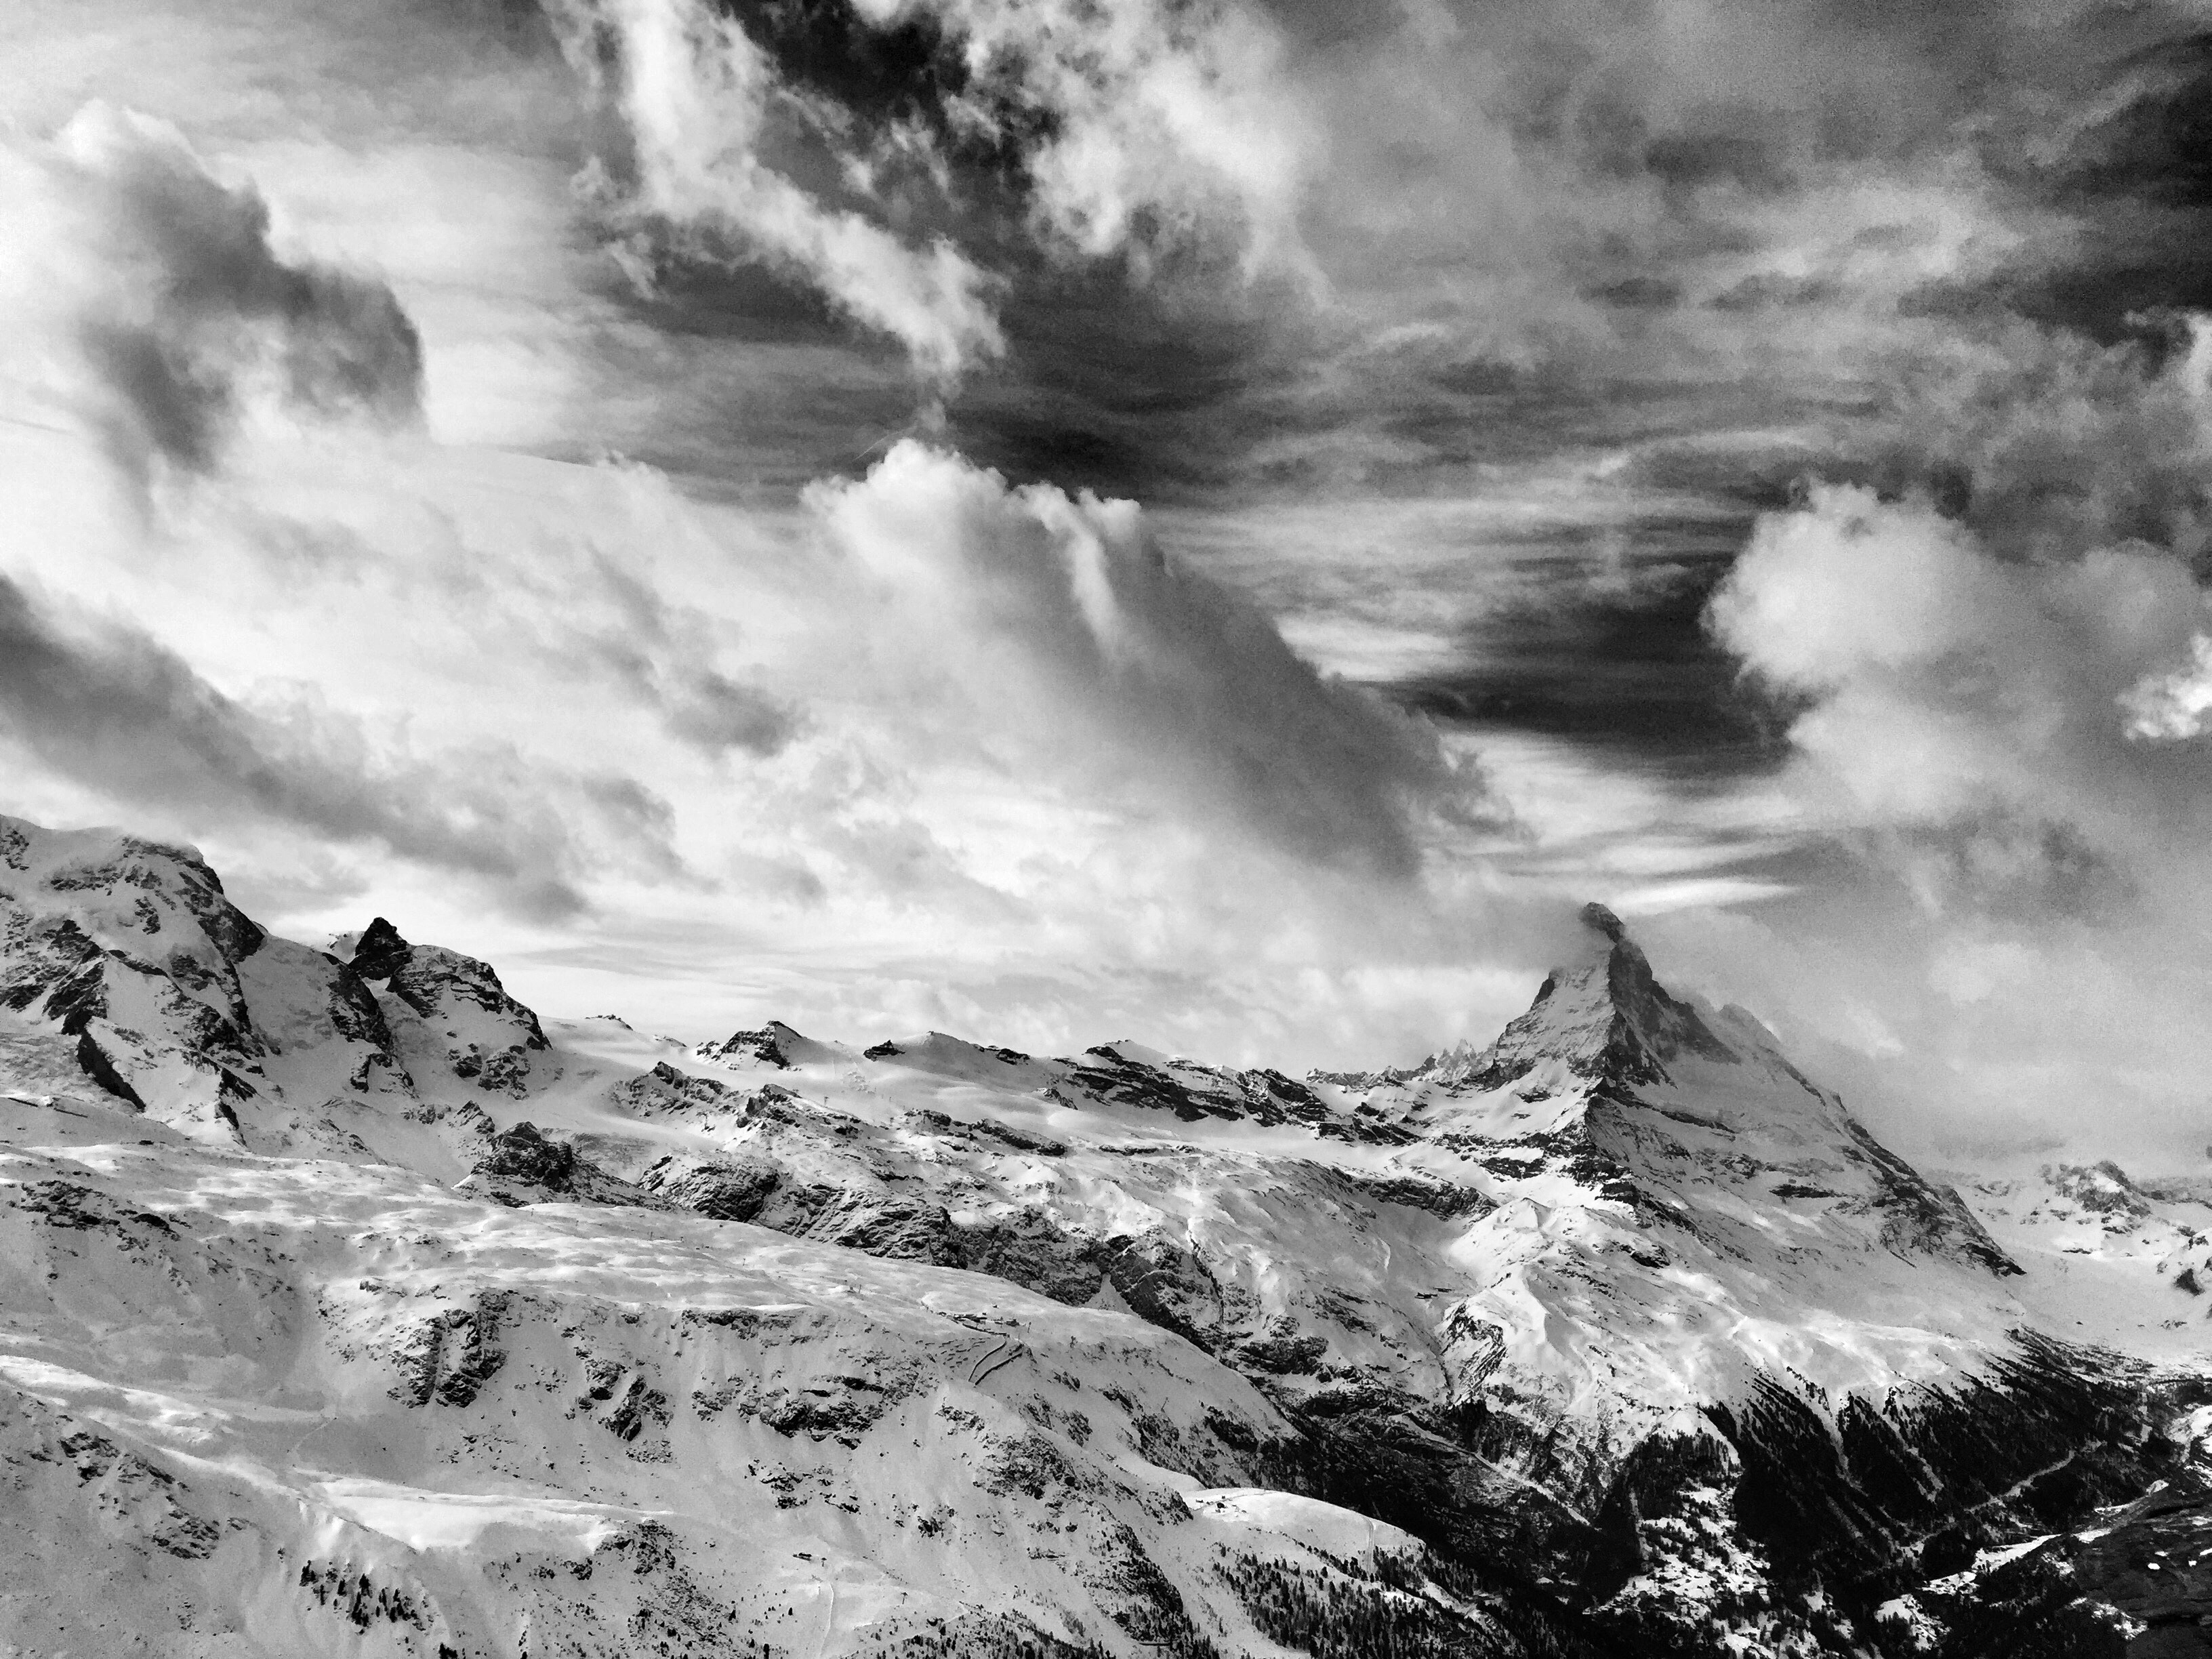 Matterhorn and clouds, Zermatt